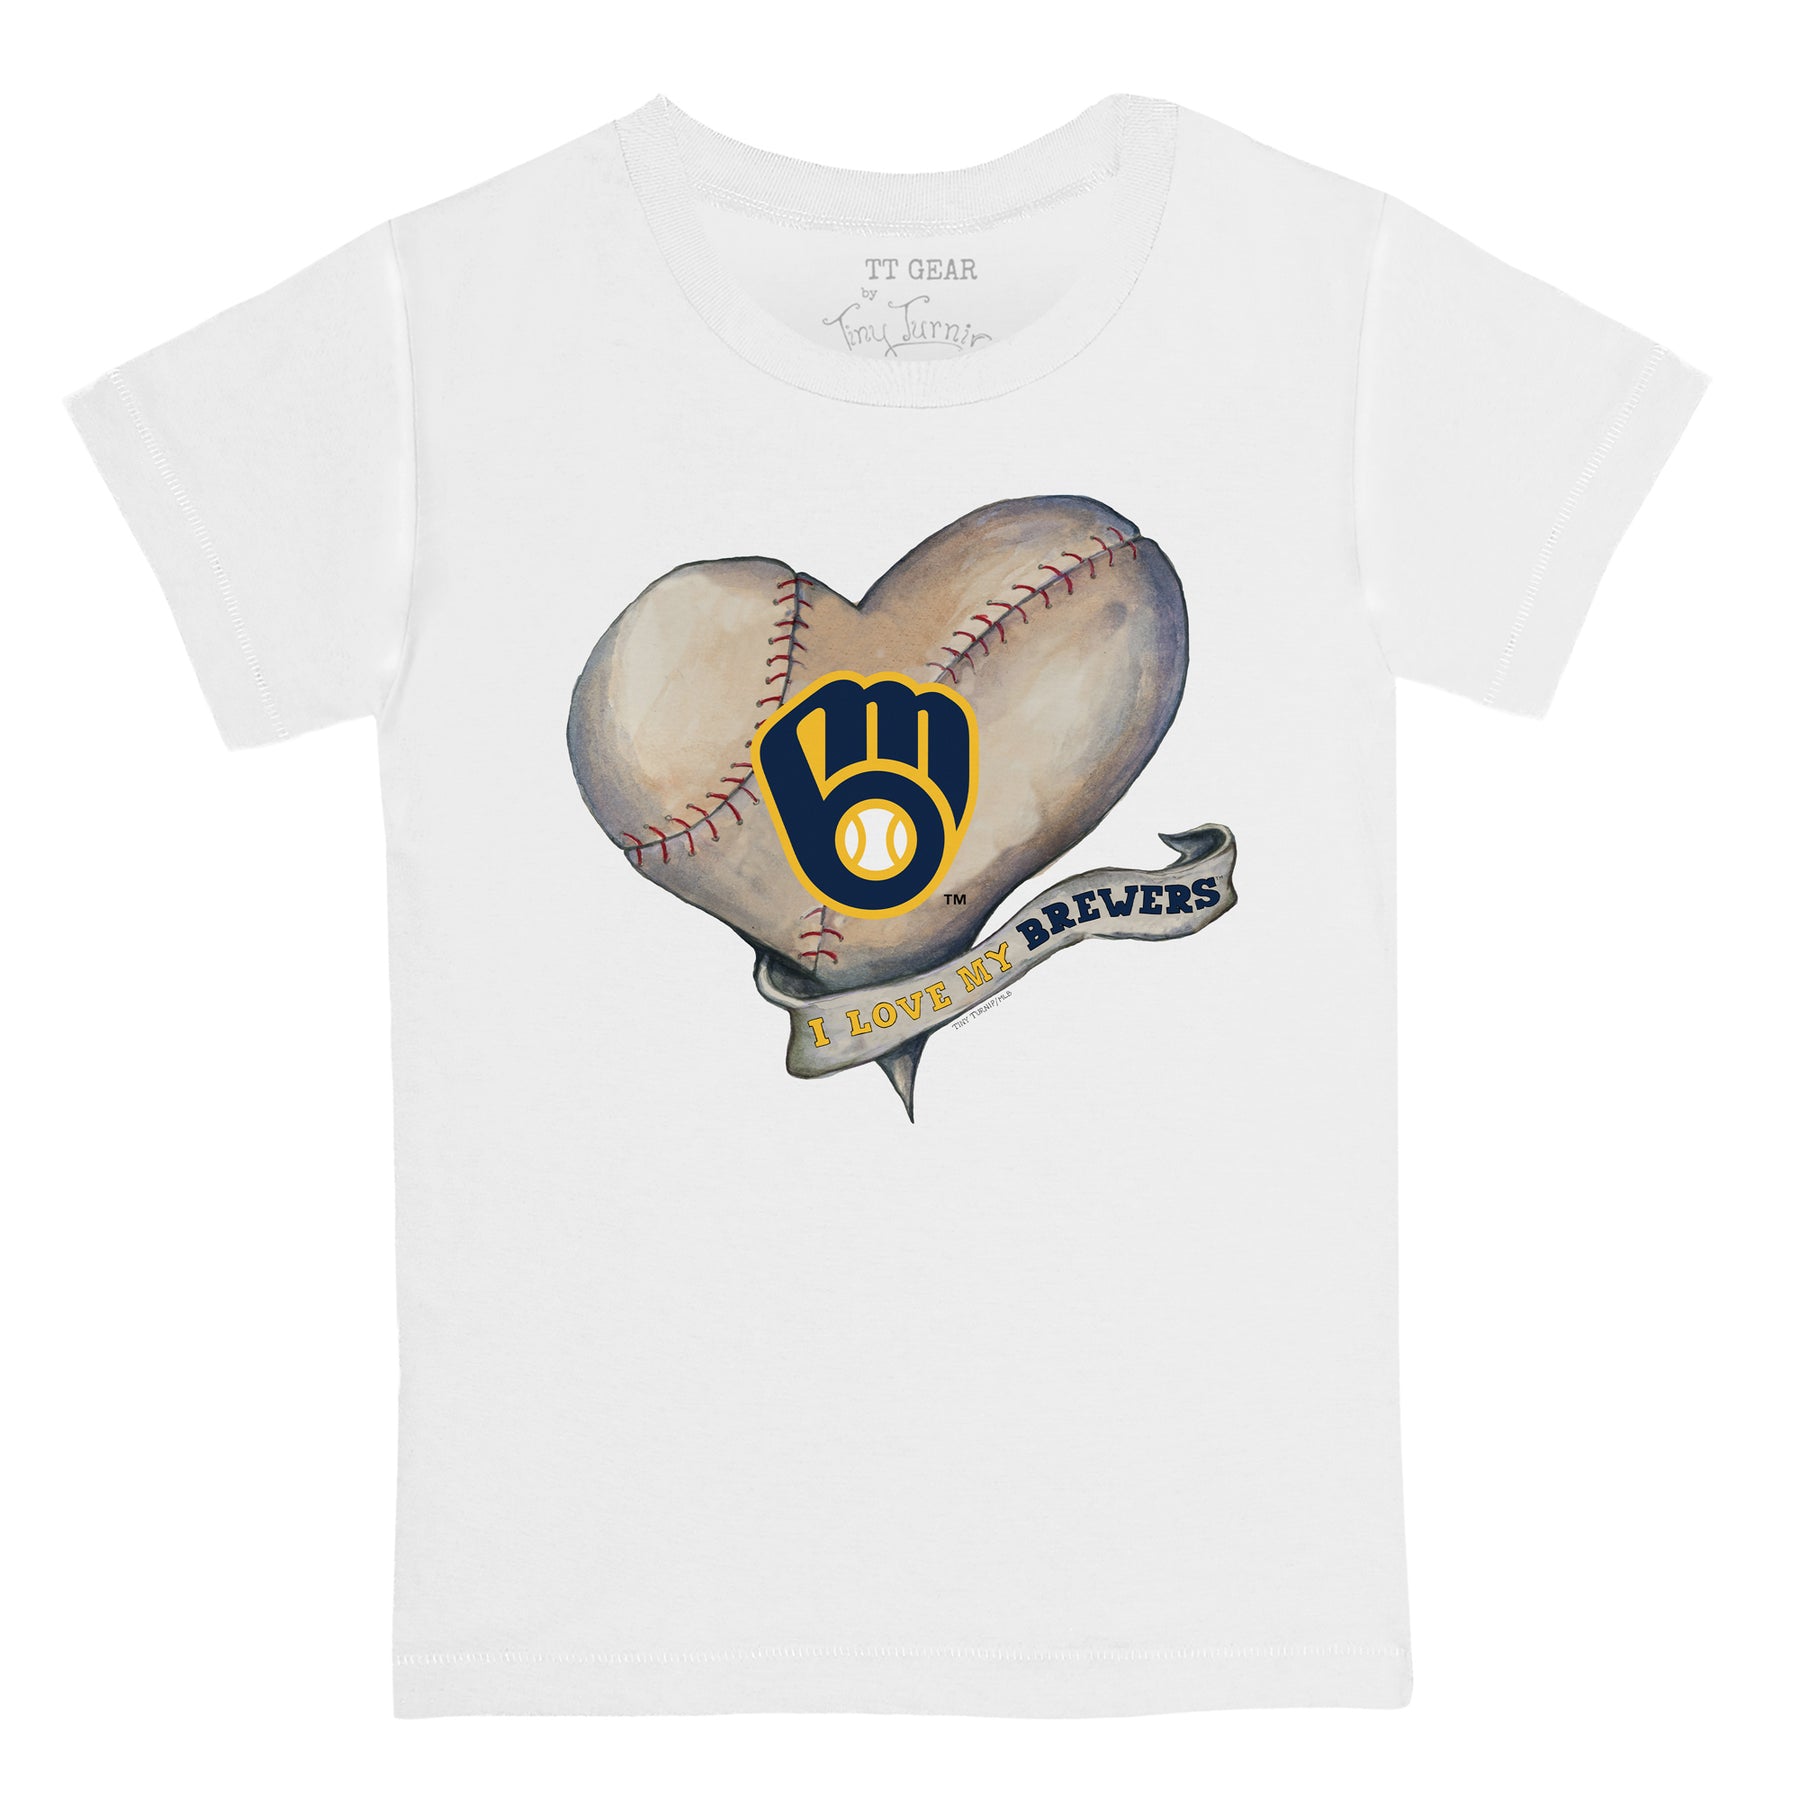 Tiny Turnip Milwaukee Brewers Baseball Heart Banner Tee Shirt Women's XS / Navy Blue